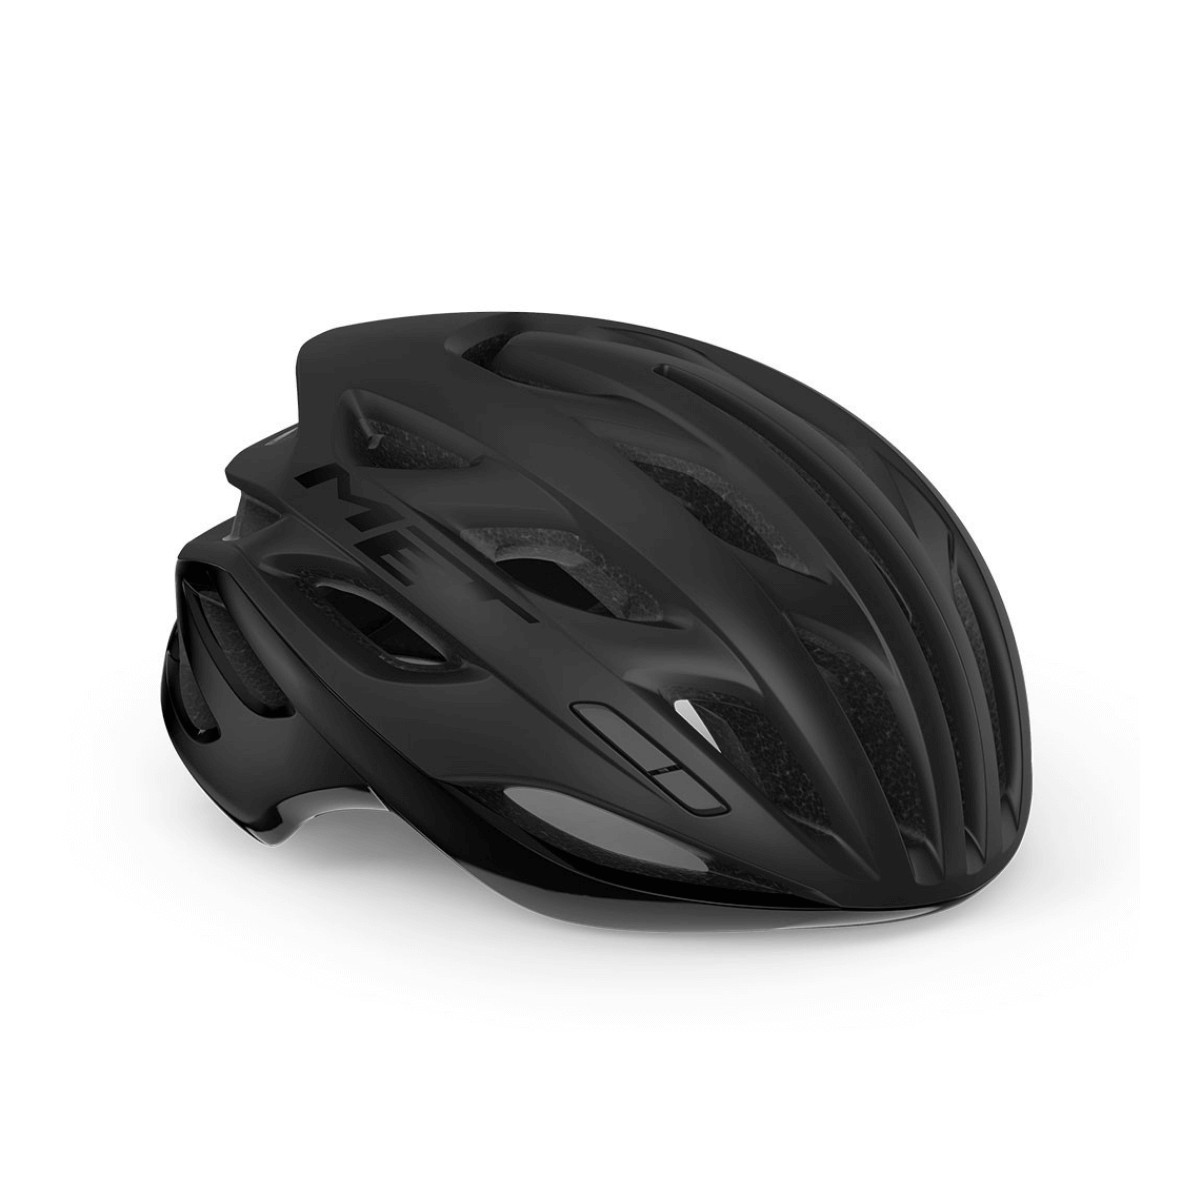 Met Estro Mips Helmet Black Matt Glossy, Size M (56-58 cm)